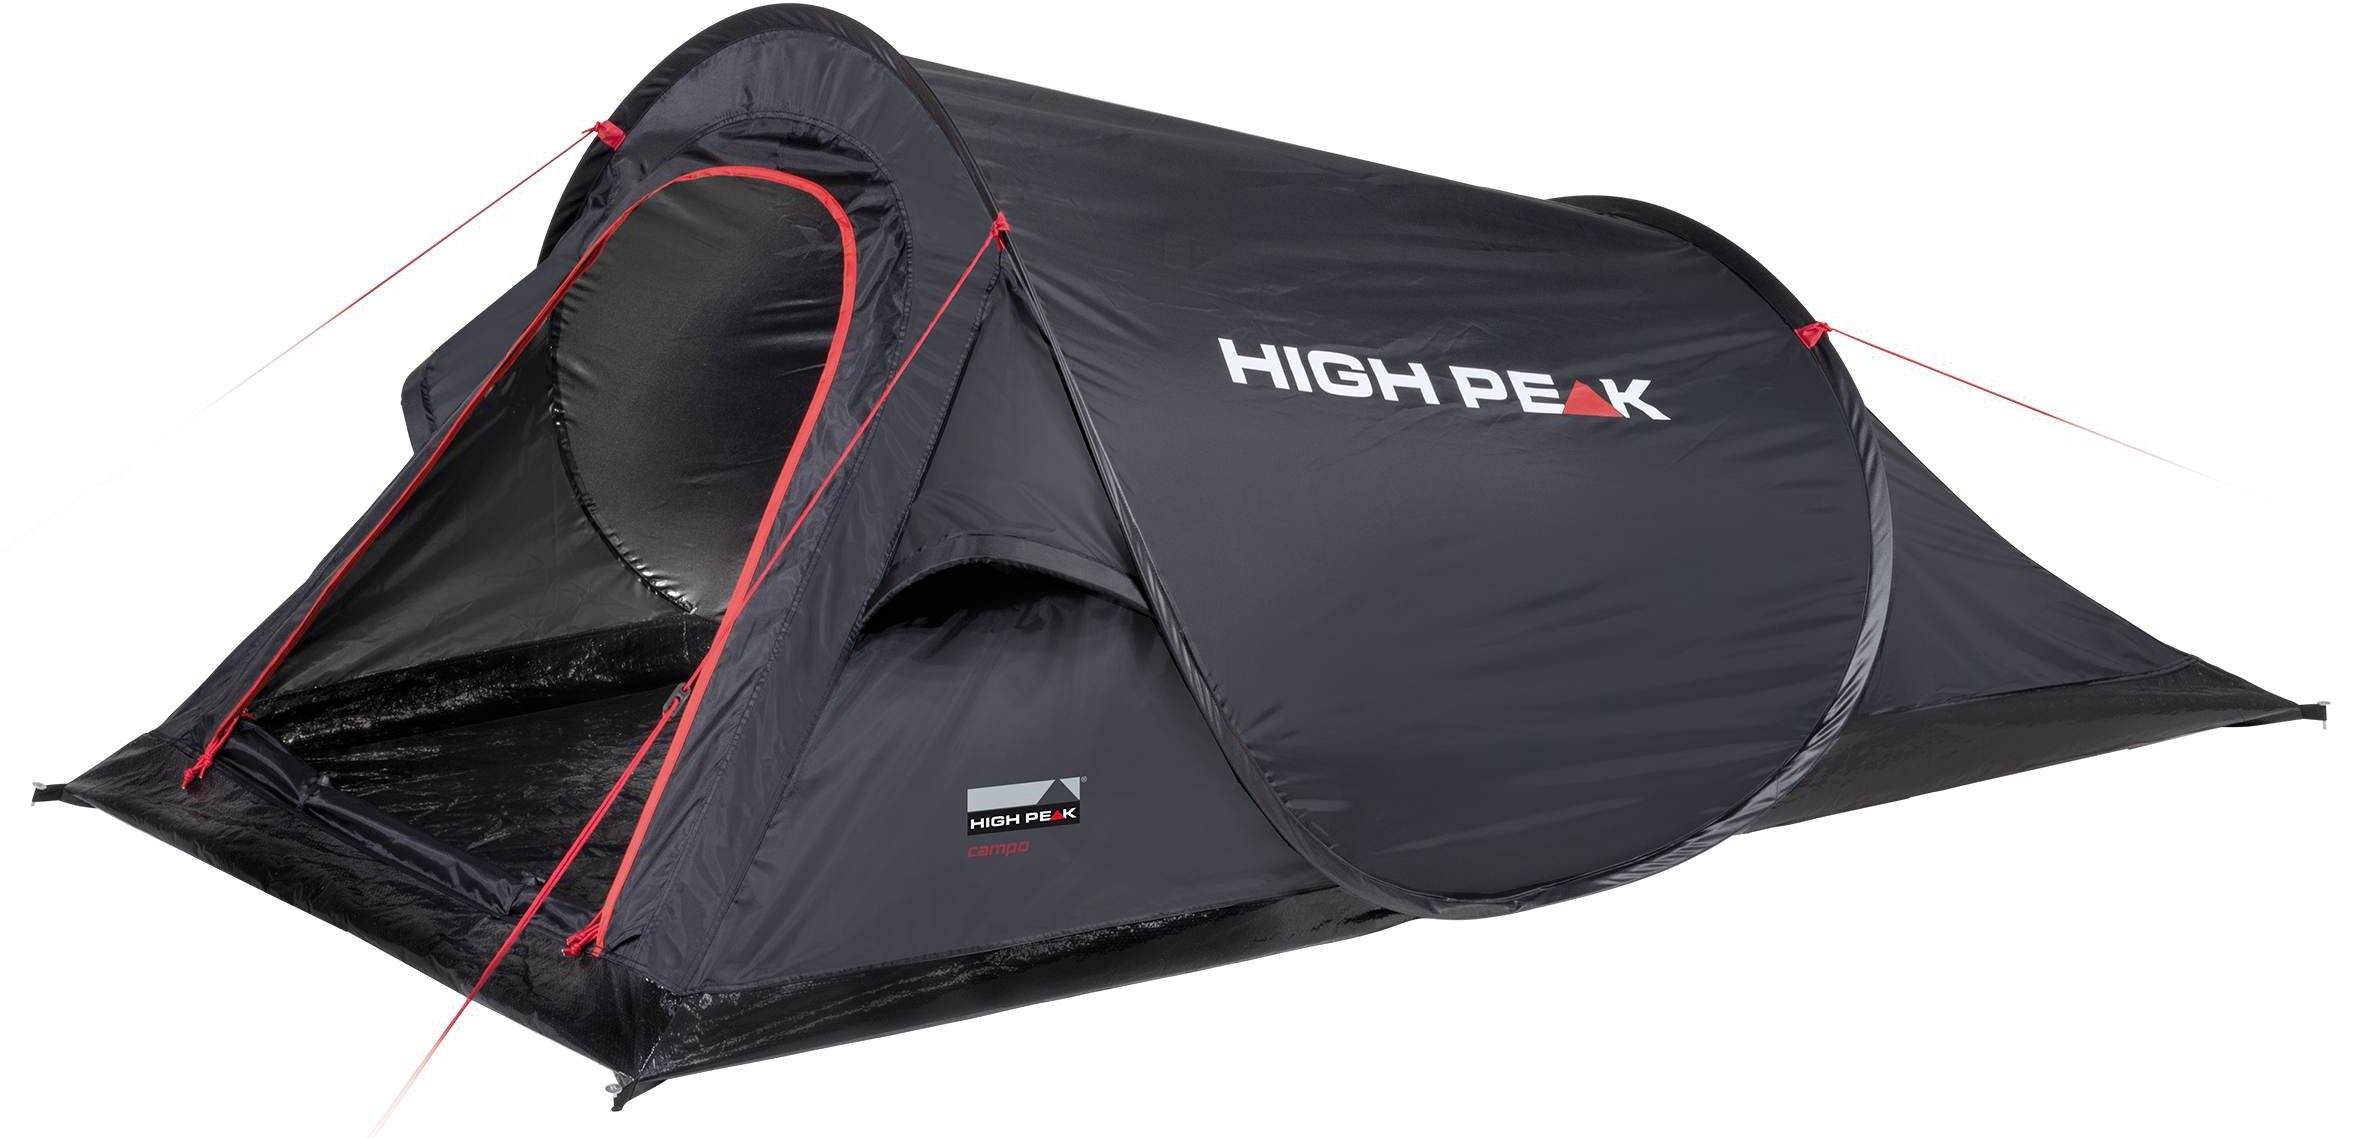 Ventilation Extra Abspann-Funktion Campo, Wurfzelt High Peak (mit Transporttasche), mit Personen: Zelt große up Pop 2